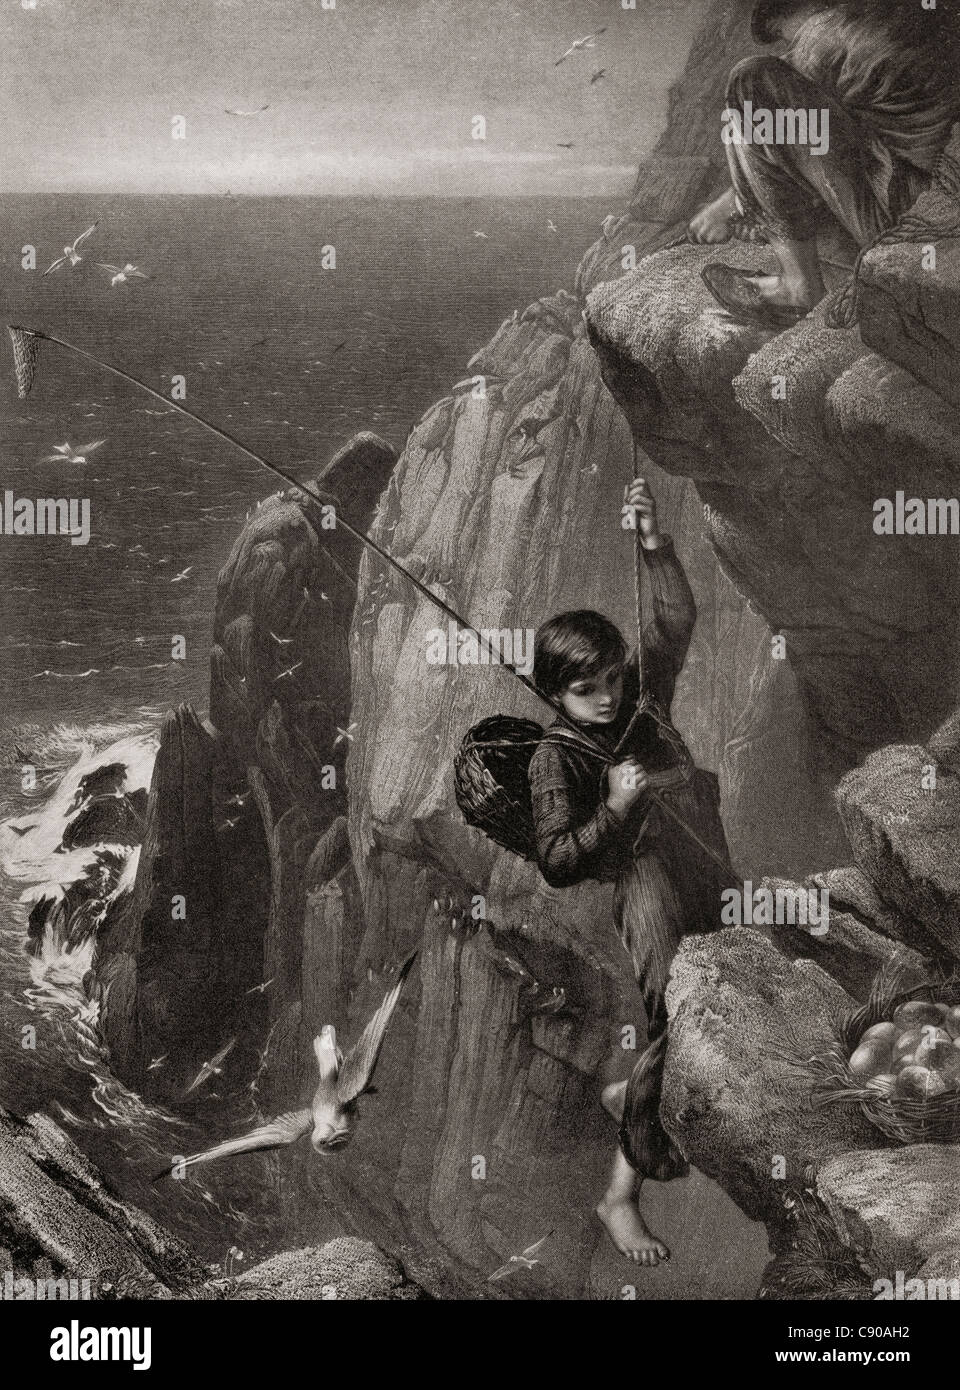 Jeune garçon collecte des œufs d'un nid situé dans une falaise rocheuse au milieu du xixe siècle. De l'Assemblée annuelle 1910 Bibby publié. Banque D'Images